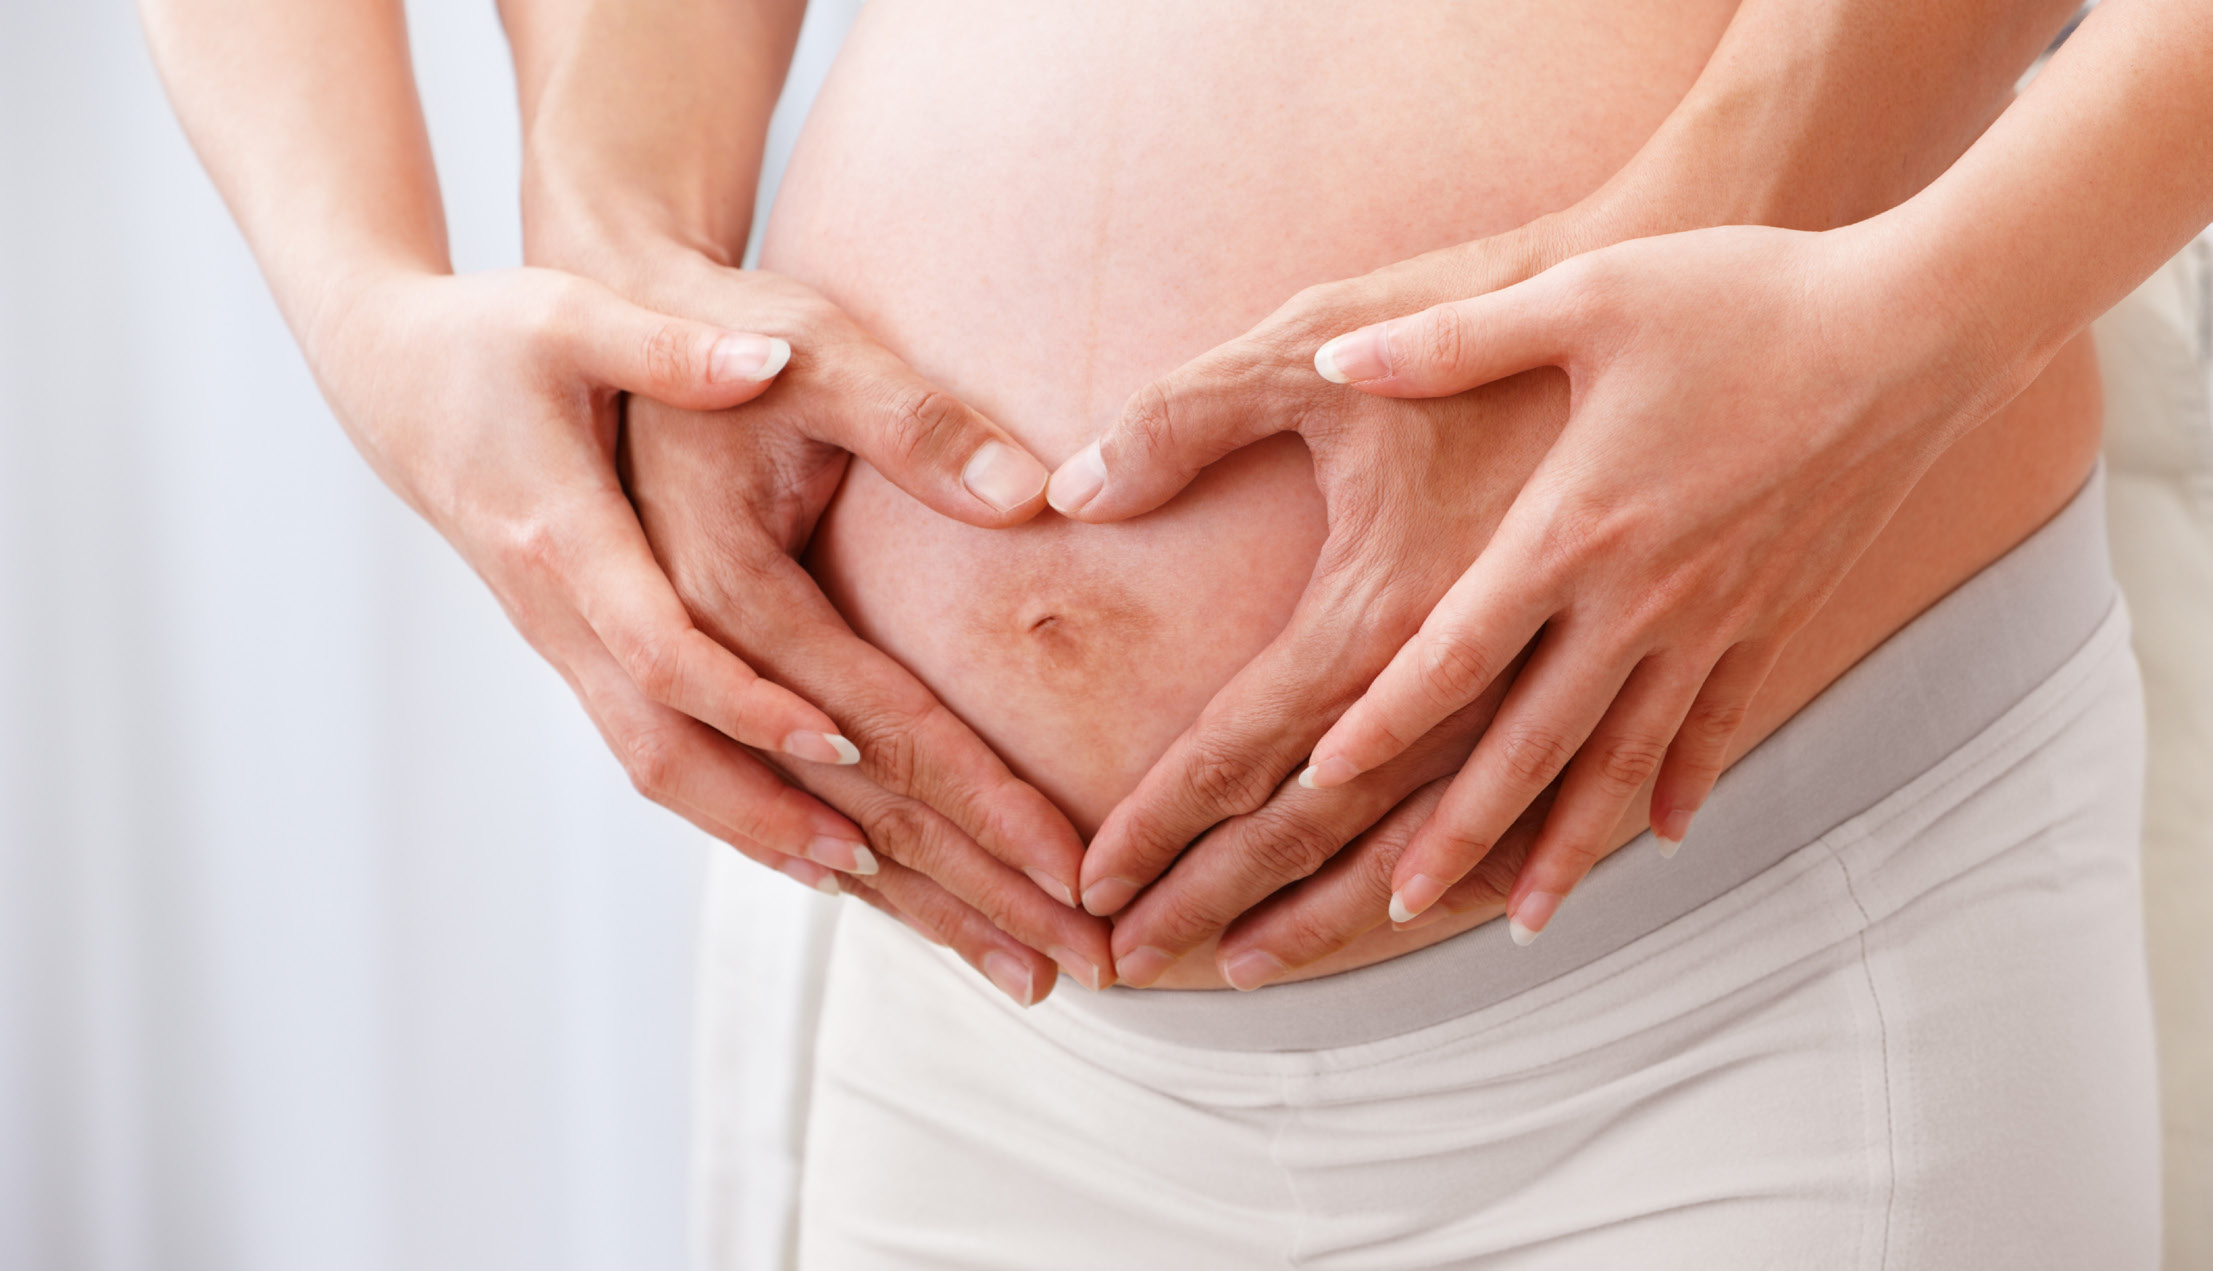 Badania po poronieniu Badania pomogą określić przyczynę poronienia, a przez to umożliwią odpowiednie przygotowanie do kolejnej ciąży i zwiększą szanse na urodzenie zdrowego dziecka.